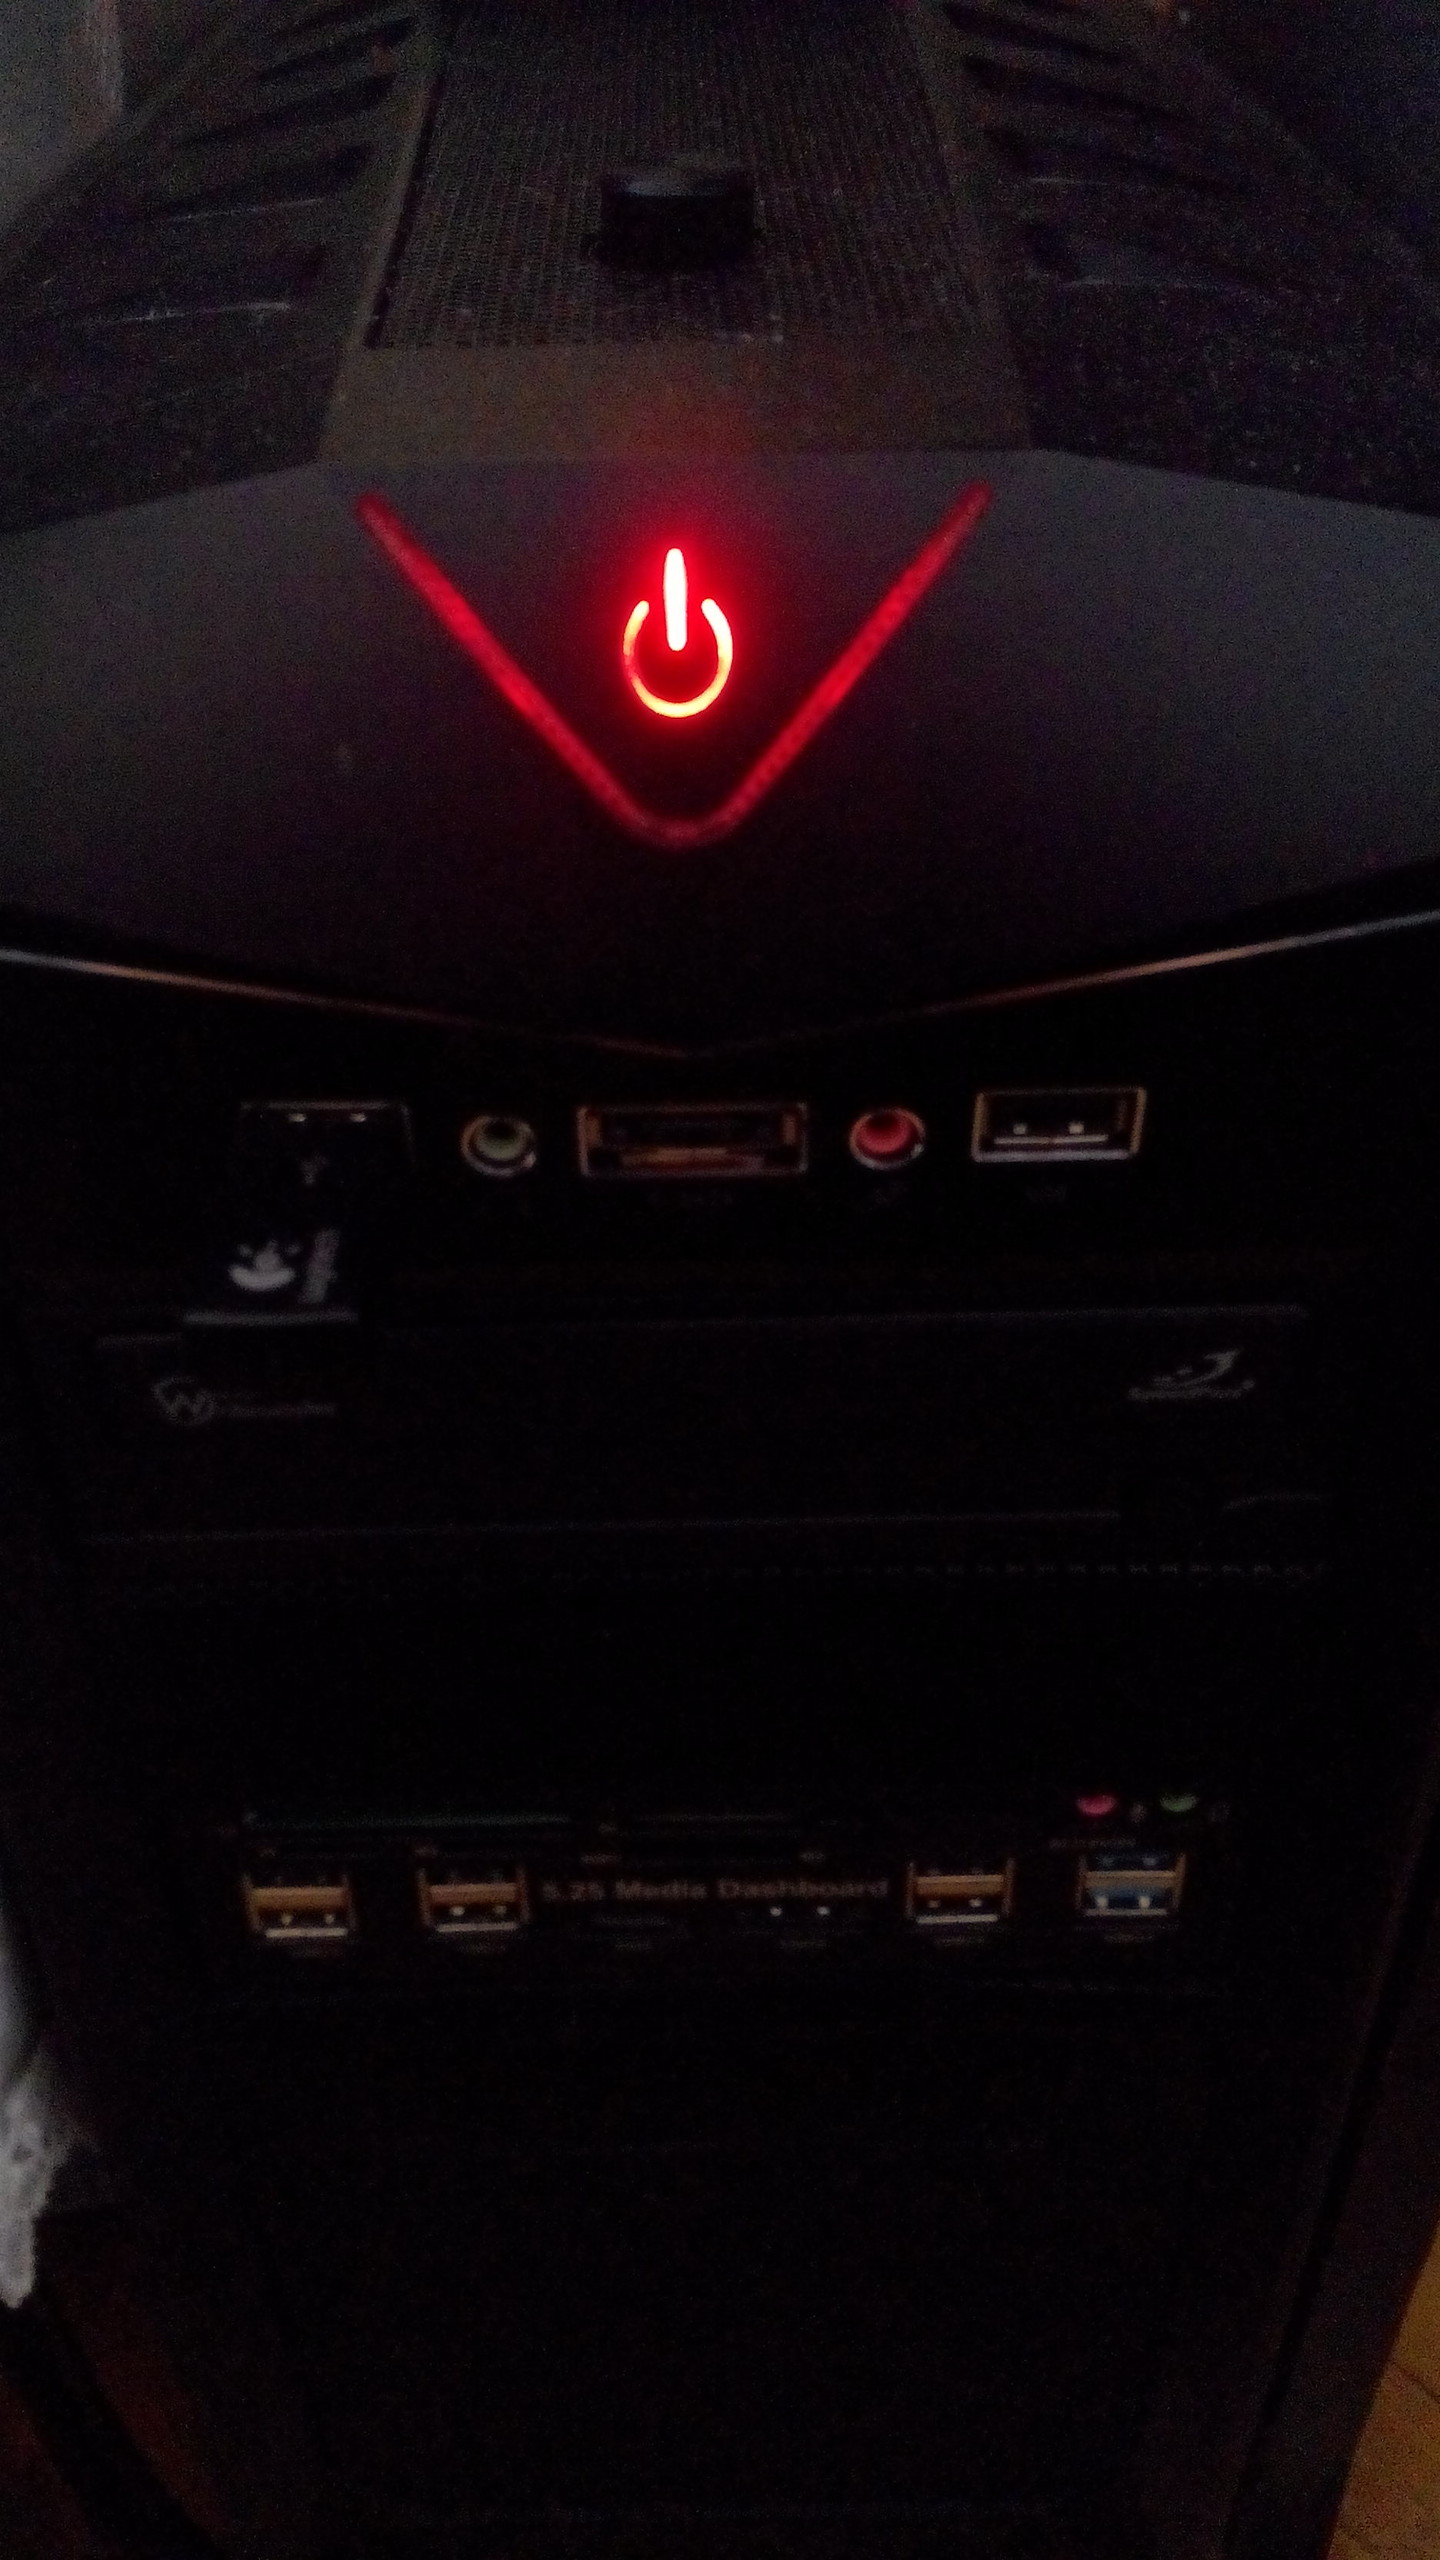  PC kapanmasına rağmen ışığı yanıyor!!